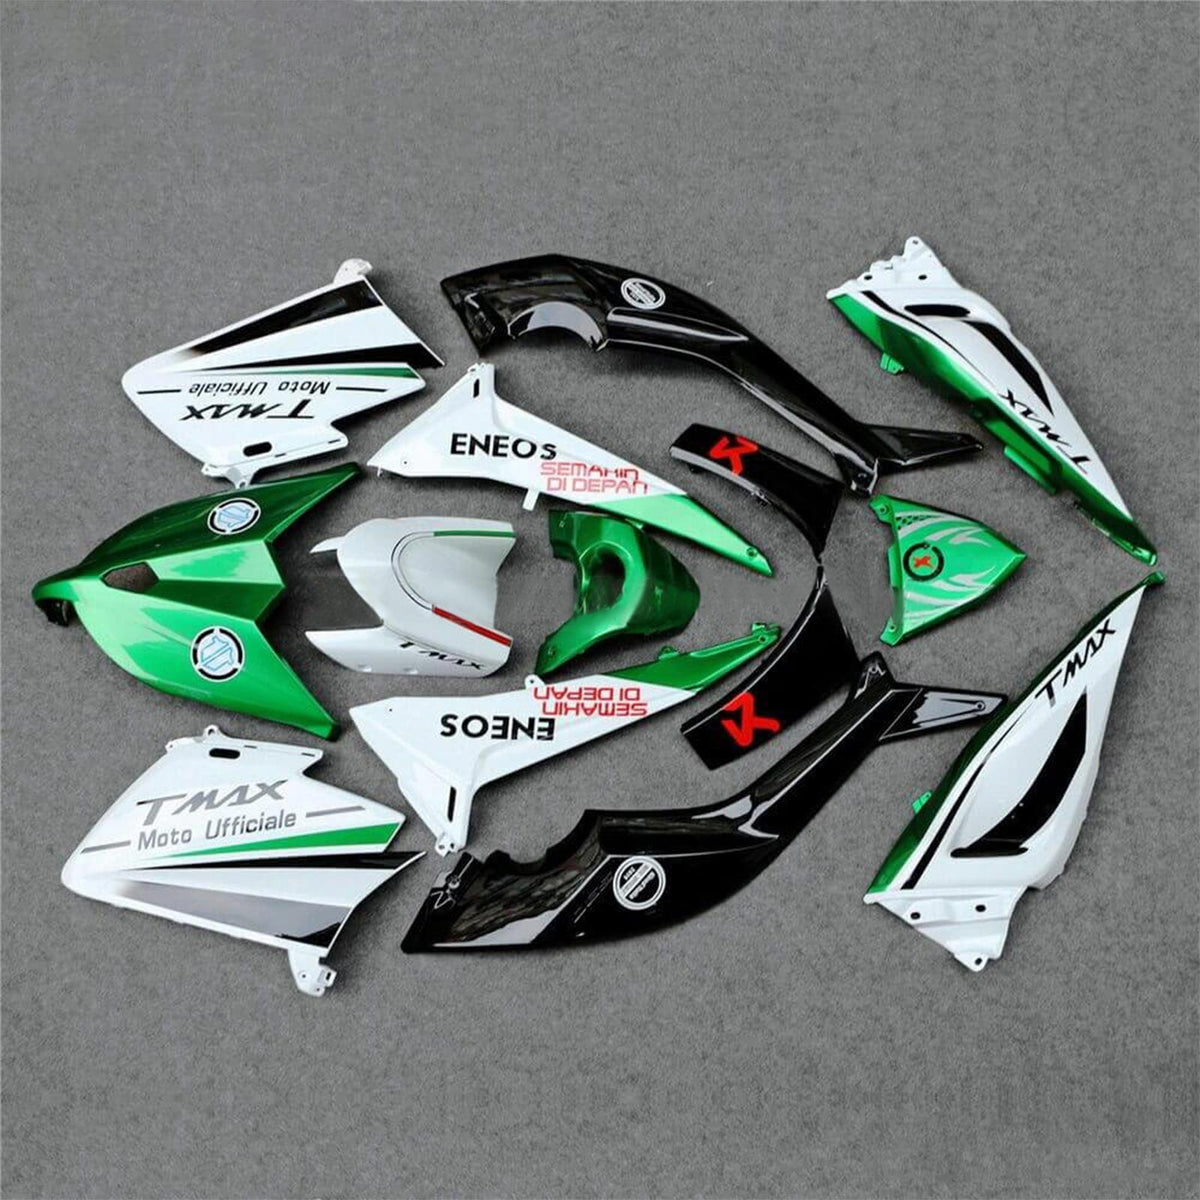 Amotopart 2012–2014 Yamaha T-Max TMAX530 Verkleidungsset in glänzendem Grün und Weiß